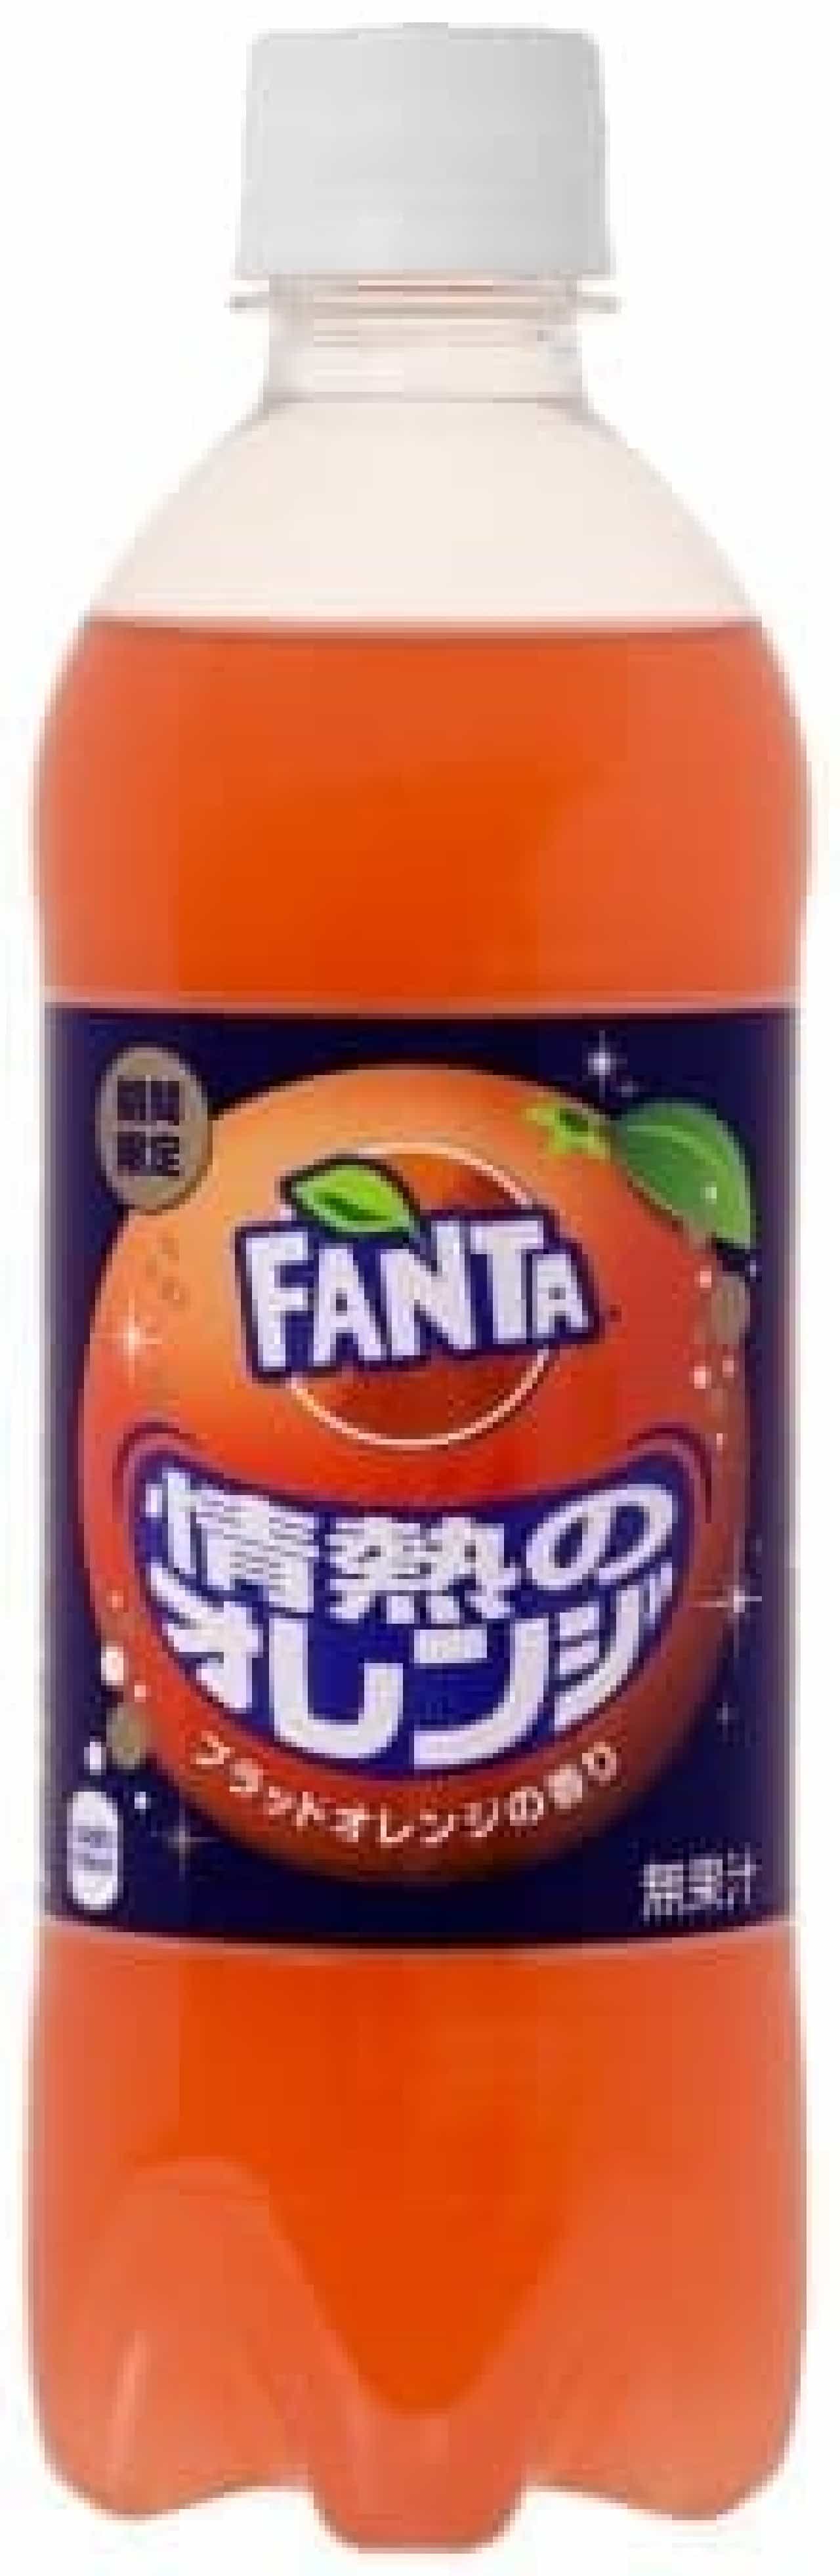 コカ・コーラシステム「ファンタ 情熱のオレンジ」